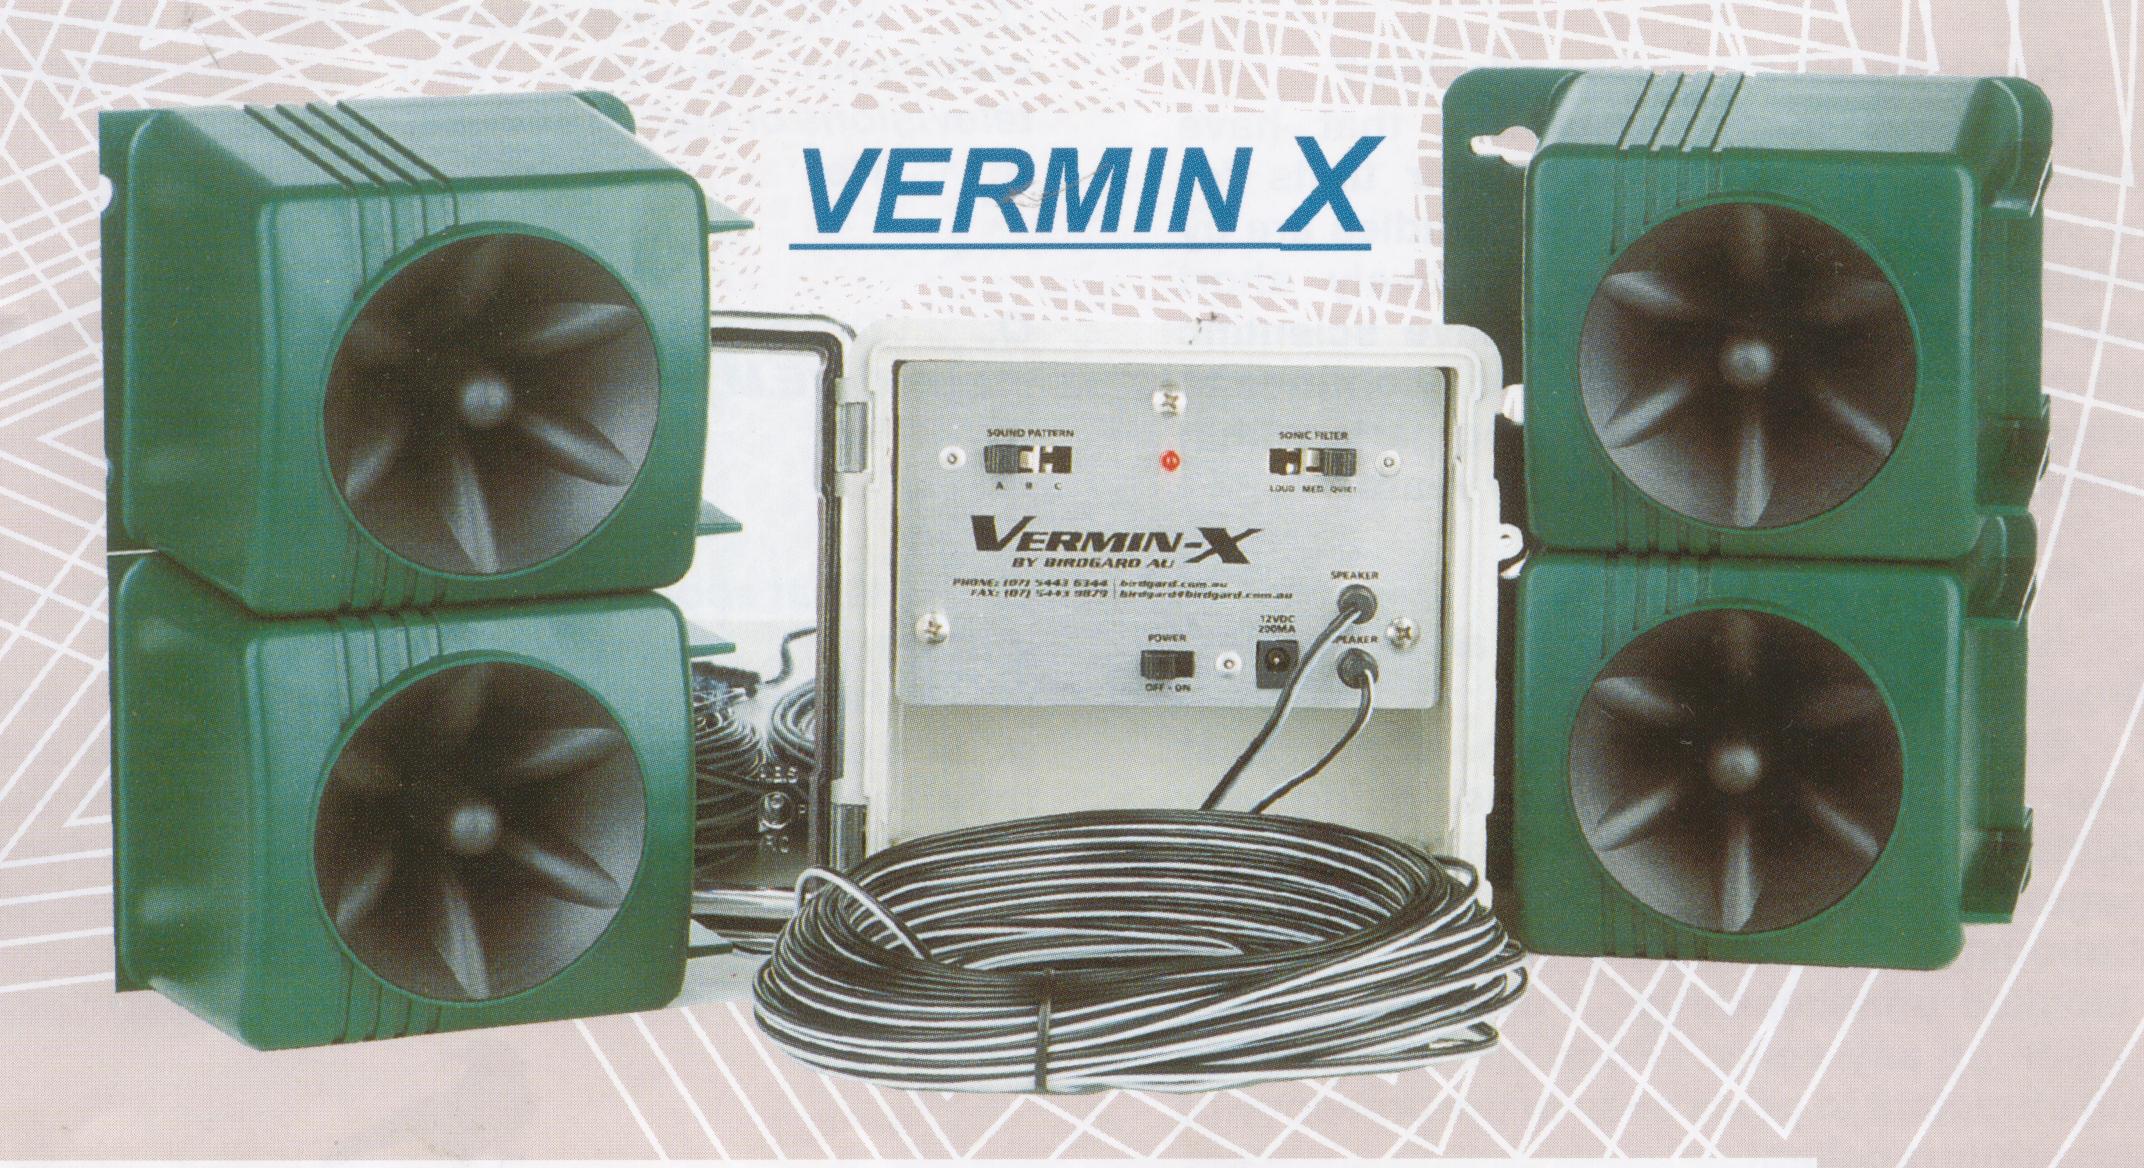 VerminX & speakers 001